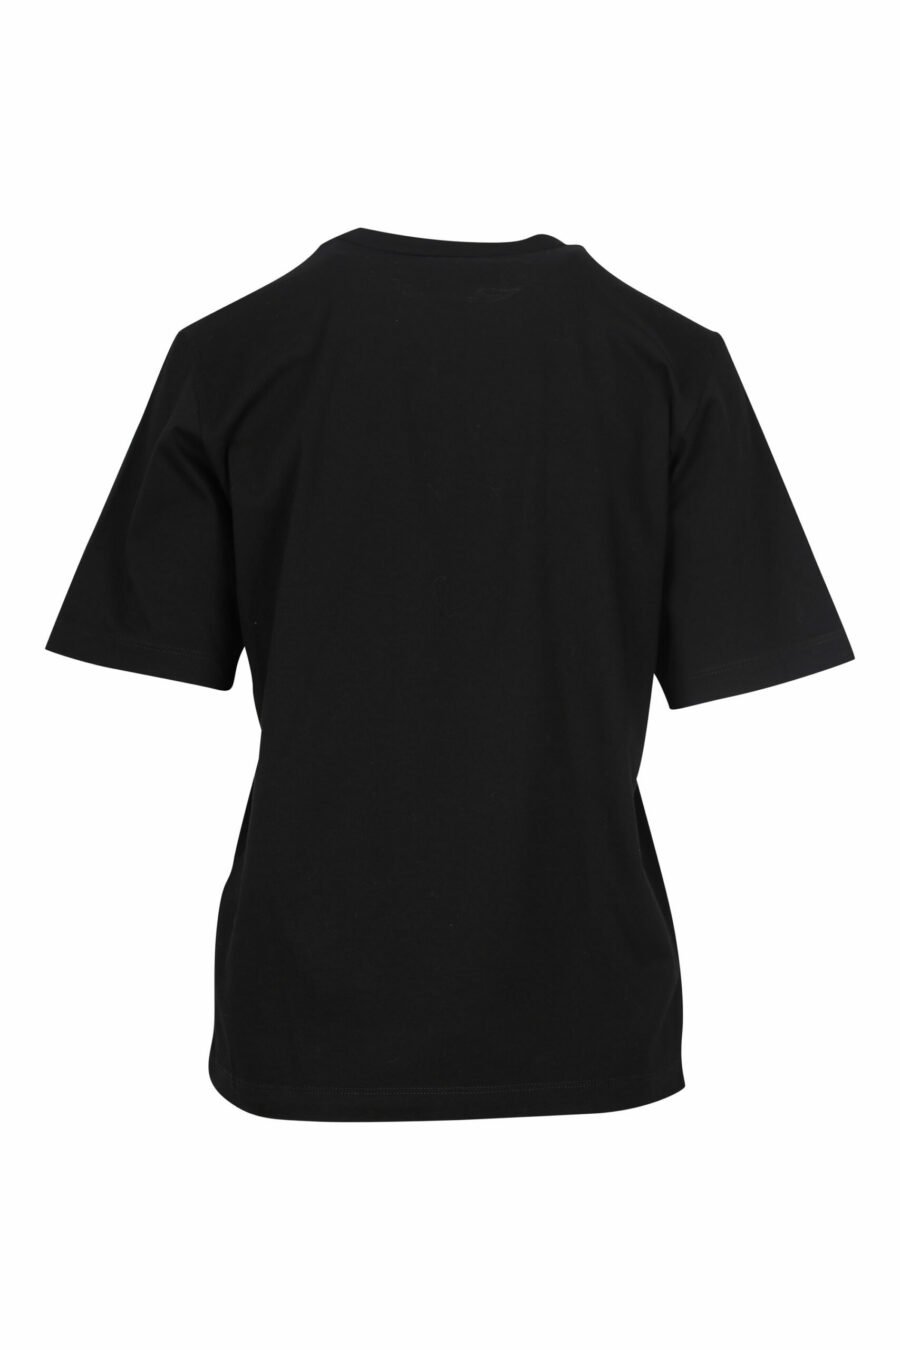 Camiseta negra con logo "icon pixeled" - 8054148006464 1 scaled